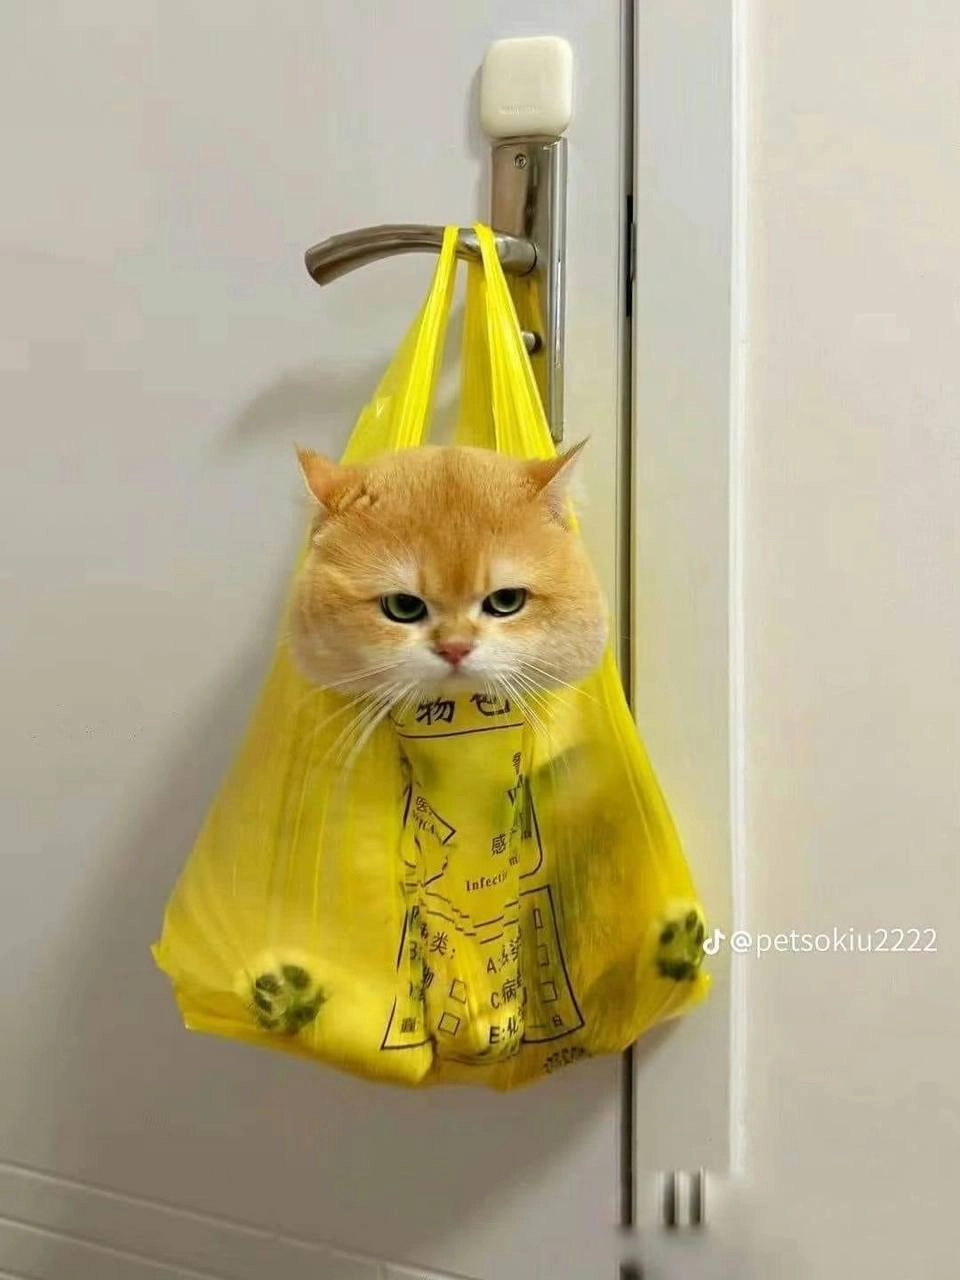 一袋装不下猫猫